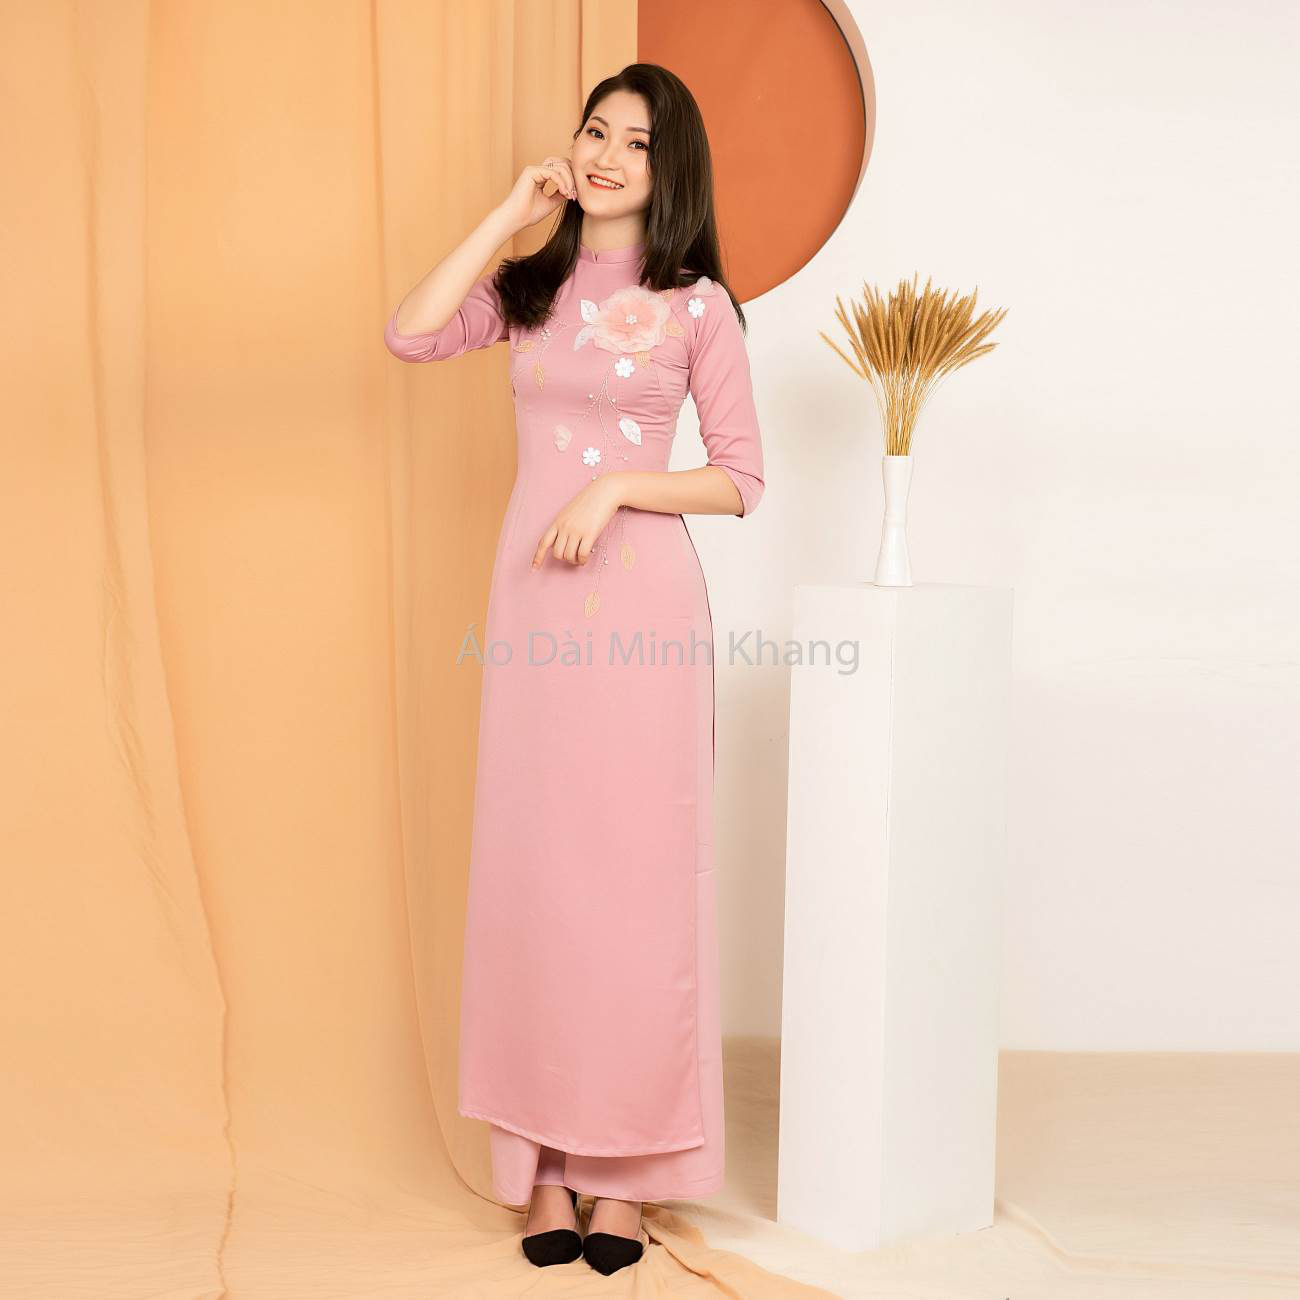 Thương hiệu thời trang áo dài Minh Khang niềm tự hào của phái đẹp Việt - Ảnh 3.